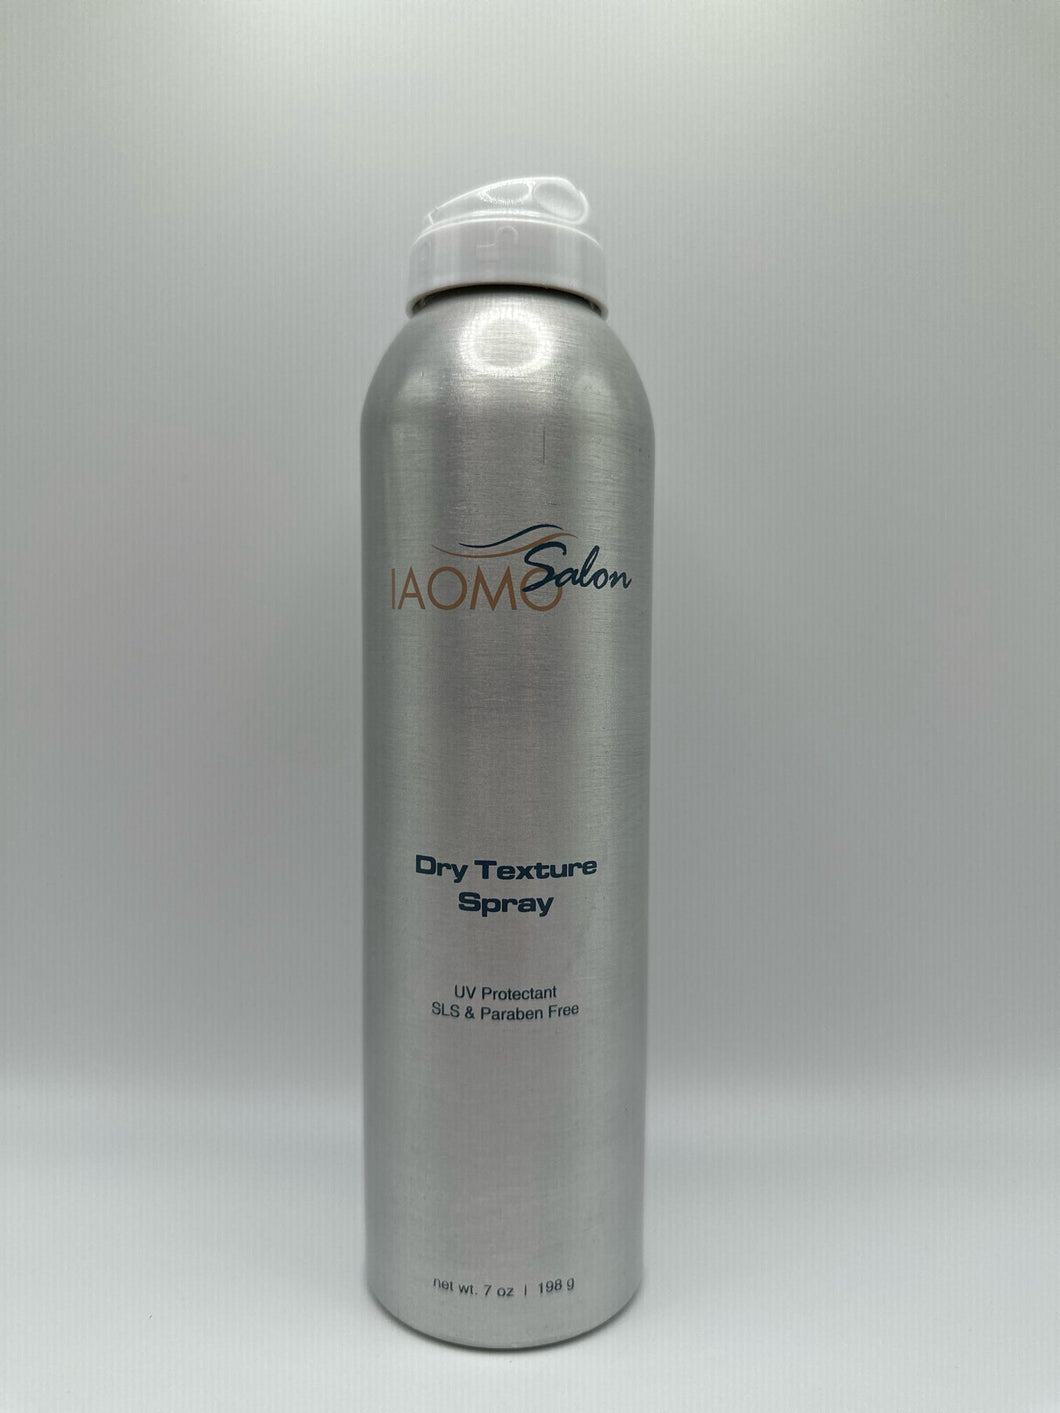 Dry Texture Spray - Salon Iaomo